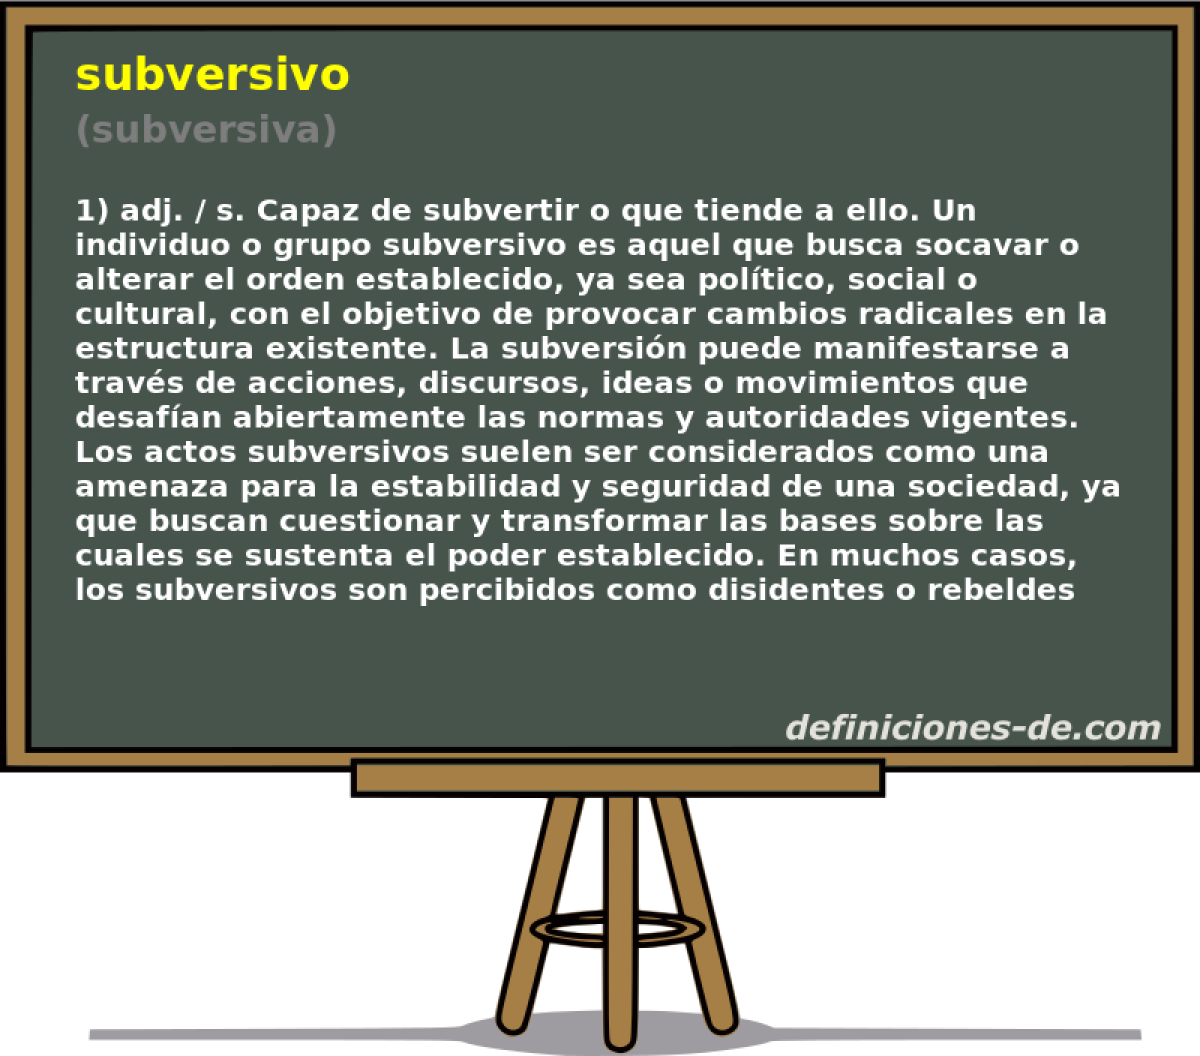 subversivo (subversiva)